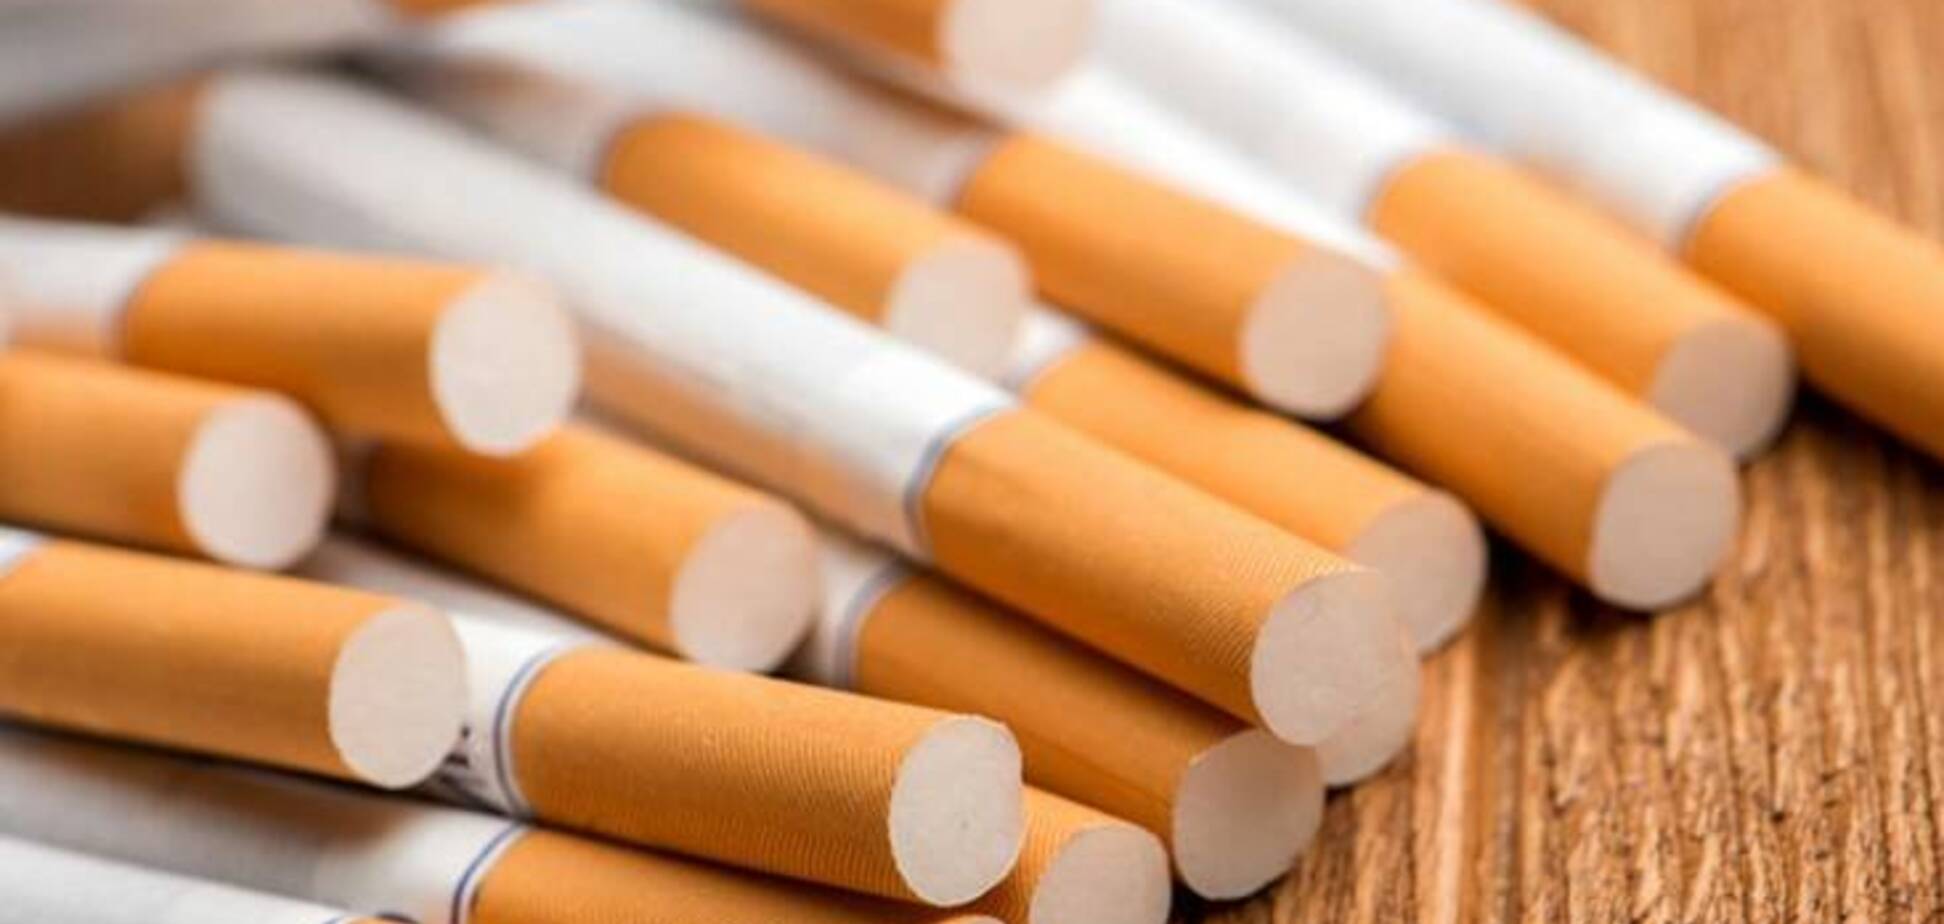 Международные табачные гиганты идут в арбитражный суд с иском на 3,1 млрд грн, - СМИ